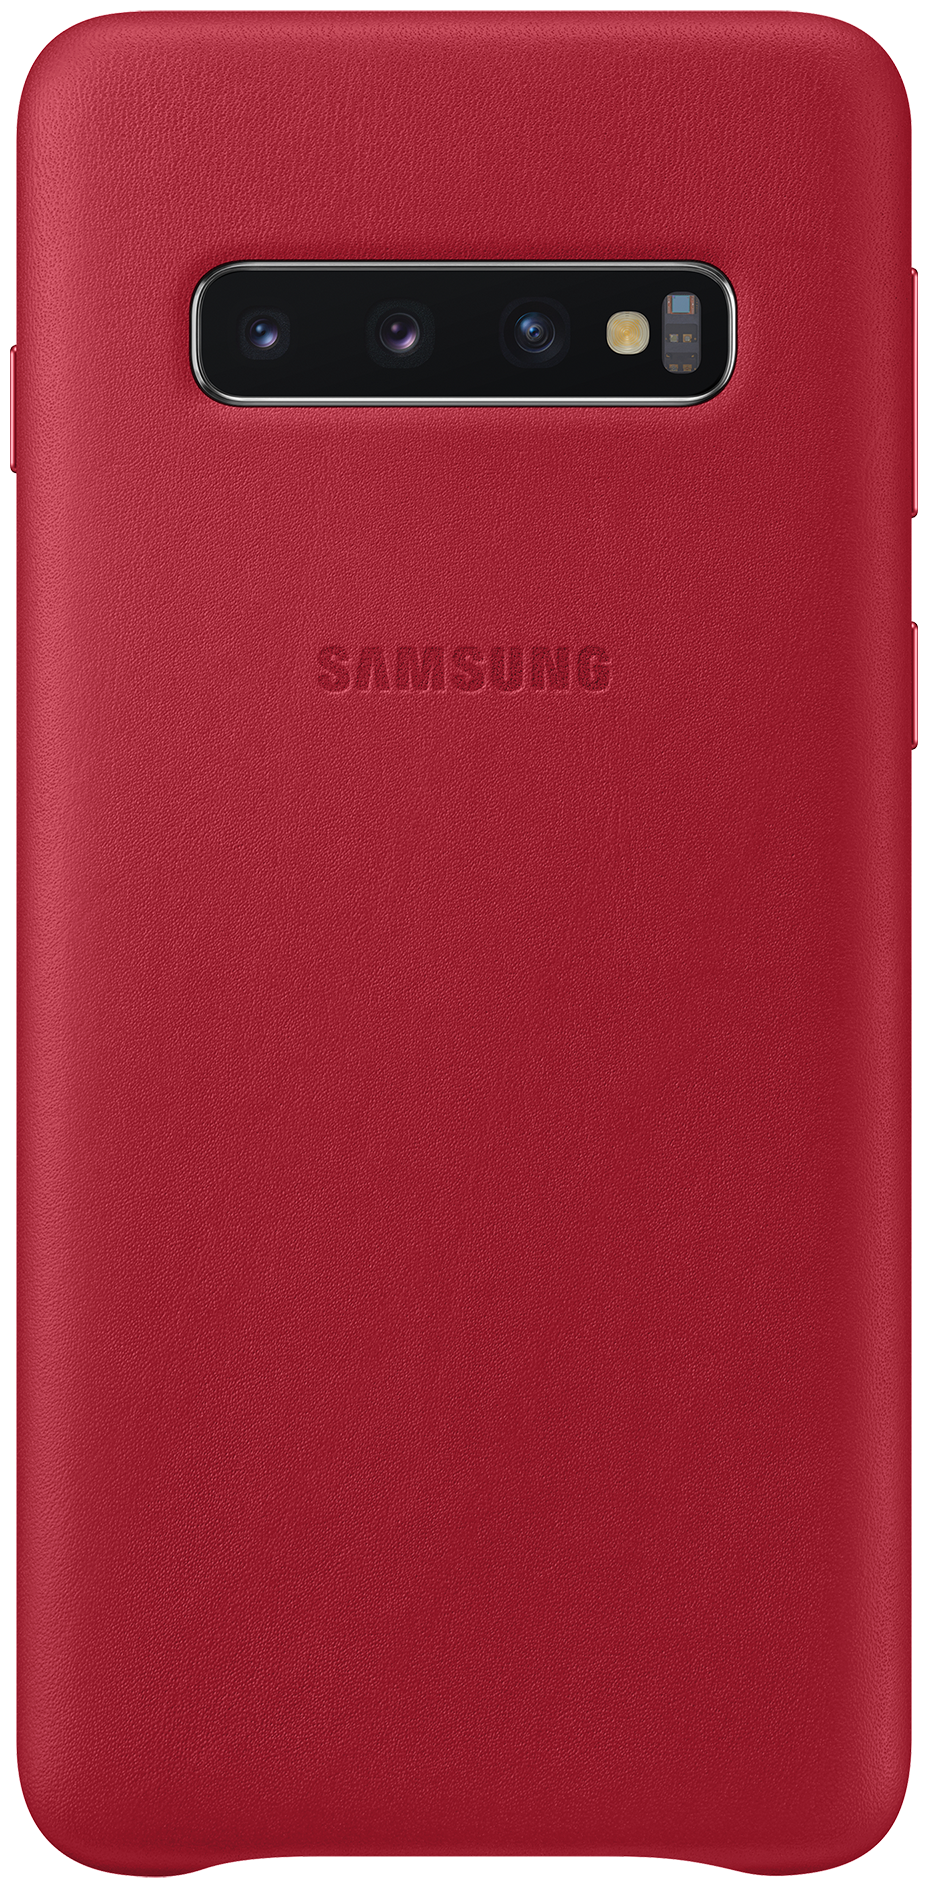 Чехол (клип-кейс) для Galaxy S10 Leather Cover красный (EF-VG973LREGRU)